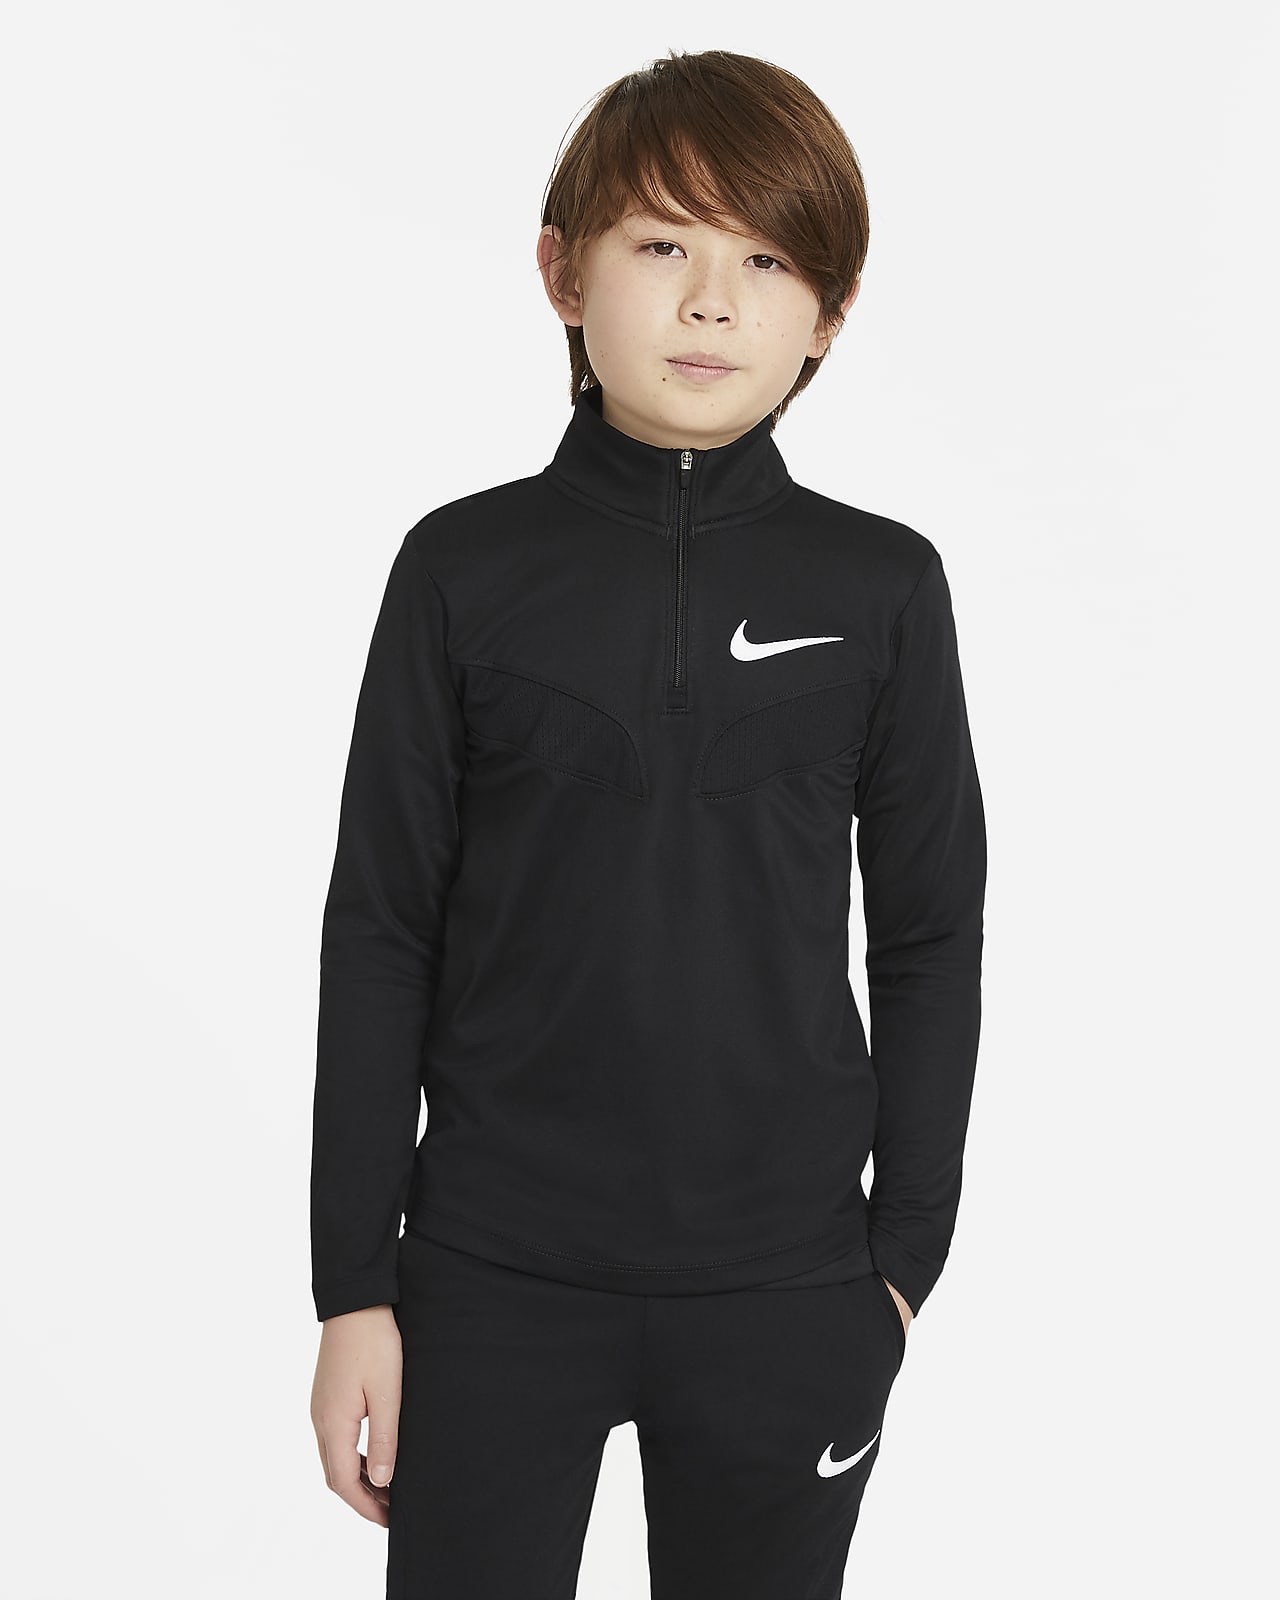 Μακρυμάνικη μπλούζα προπόνησης Nike Sport για μεγάλα αγόρια